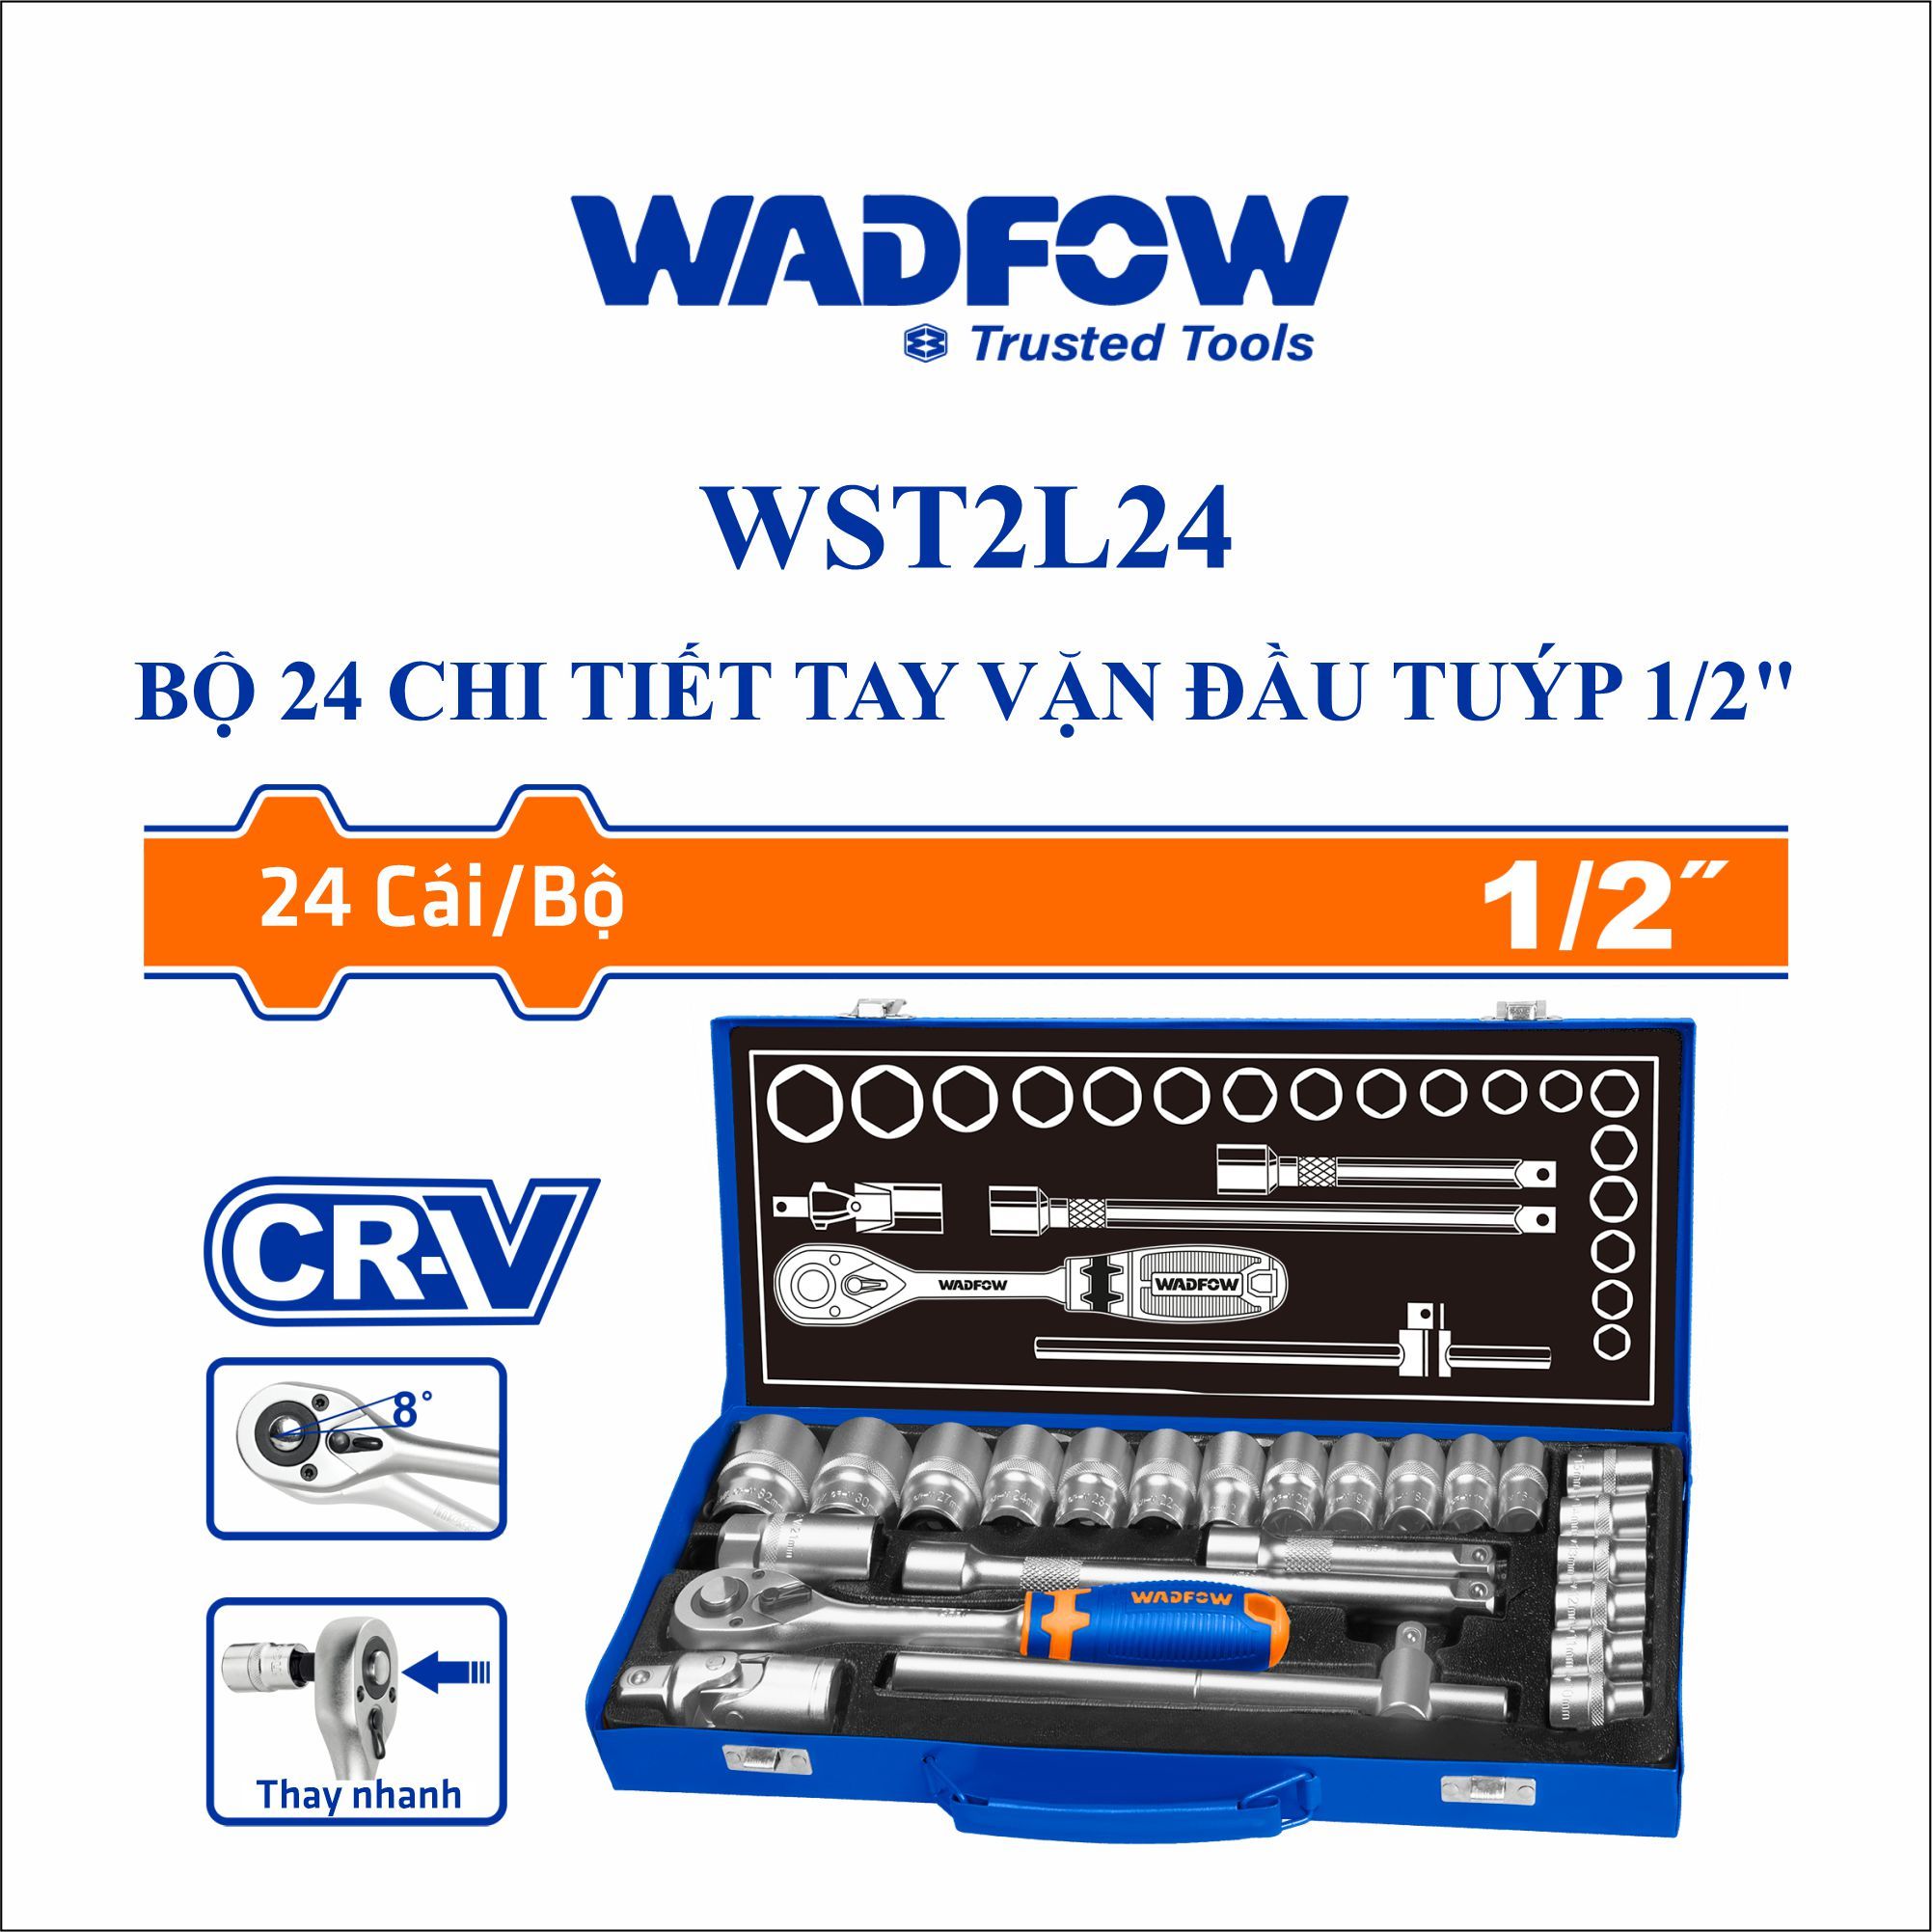  Bộ 24 chi tiết tay vặn đầu tuýp 1/2 Inch WADFOW WST2L24 